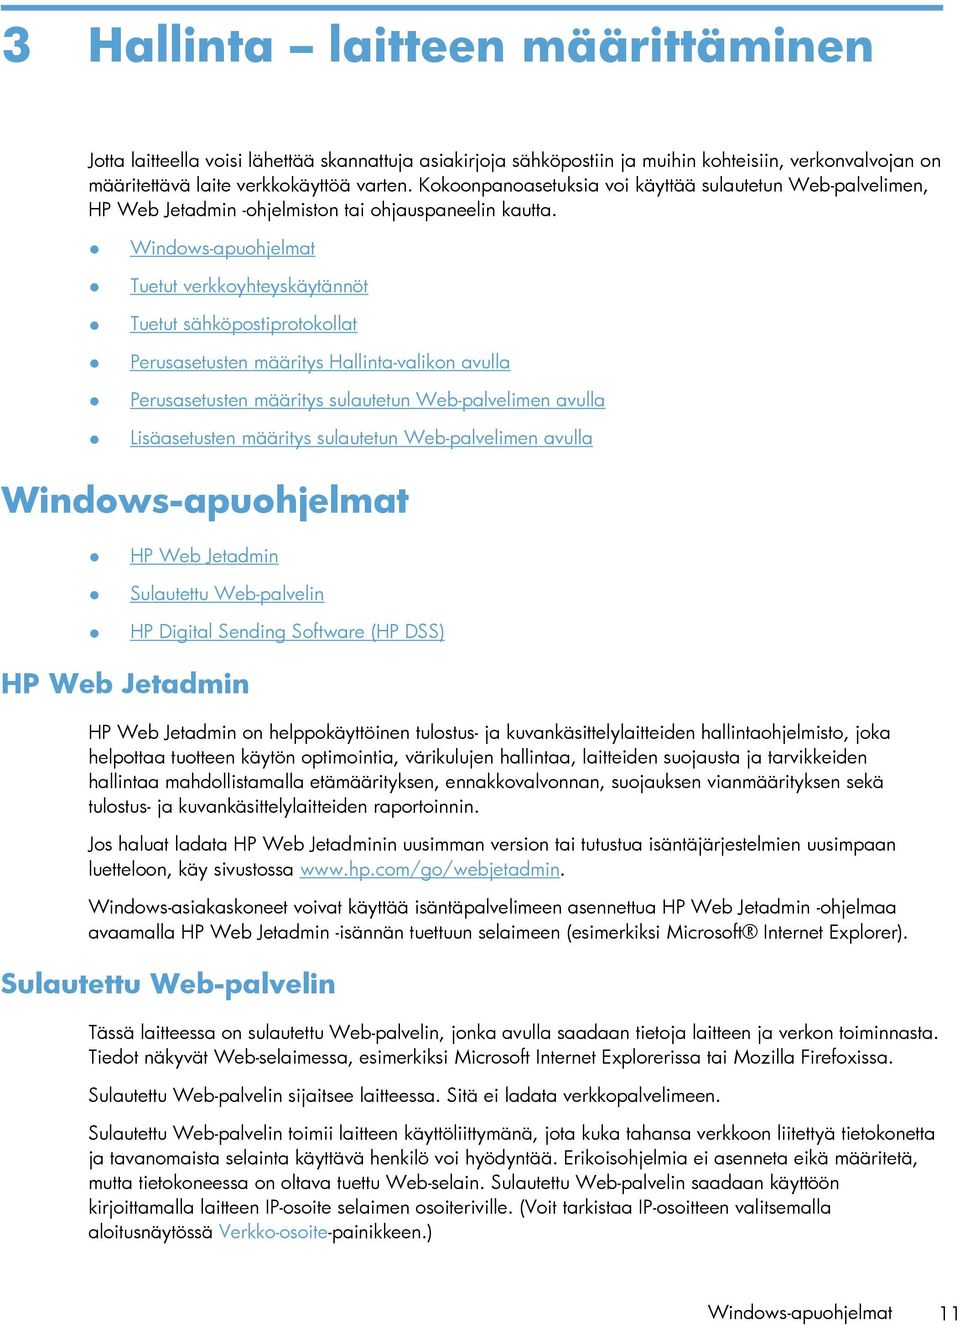 Windows-apuohjelmat Tuetut verkkoyhteyskäytännöt Tuetut sähköpostiprotokollat Perusasetusten määritys Hallinta-valikon avulla Perusasetusten määritys sulautetun Web-palvelimen avulla Lisäasetusten